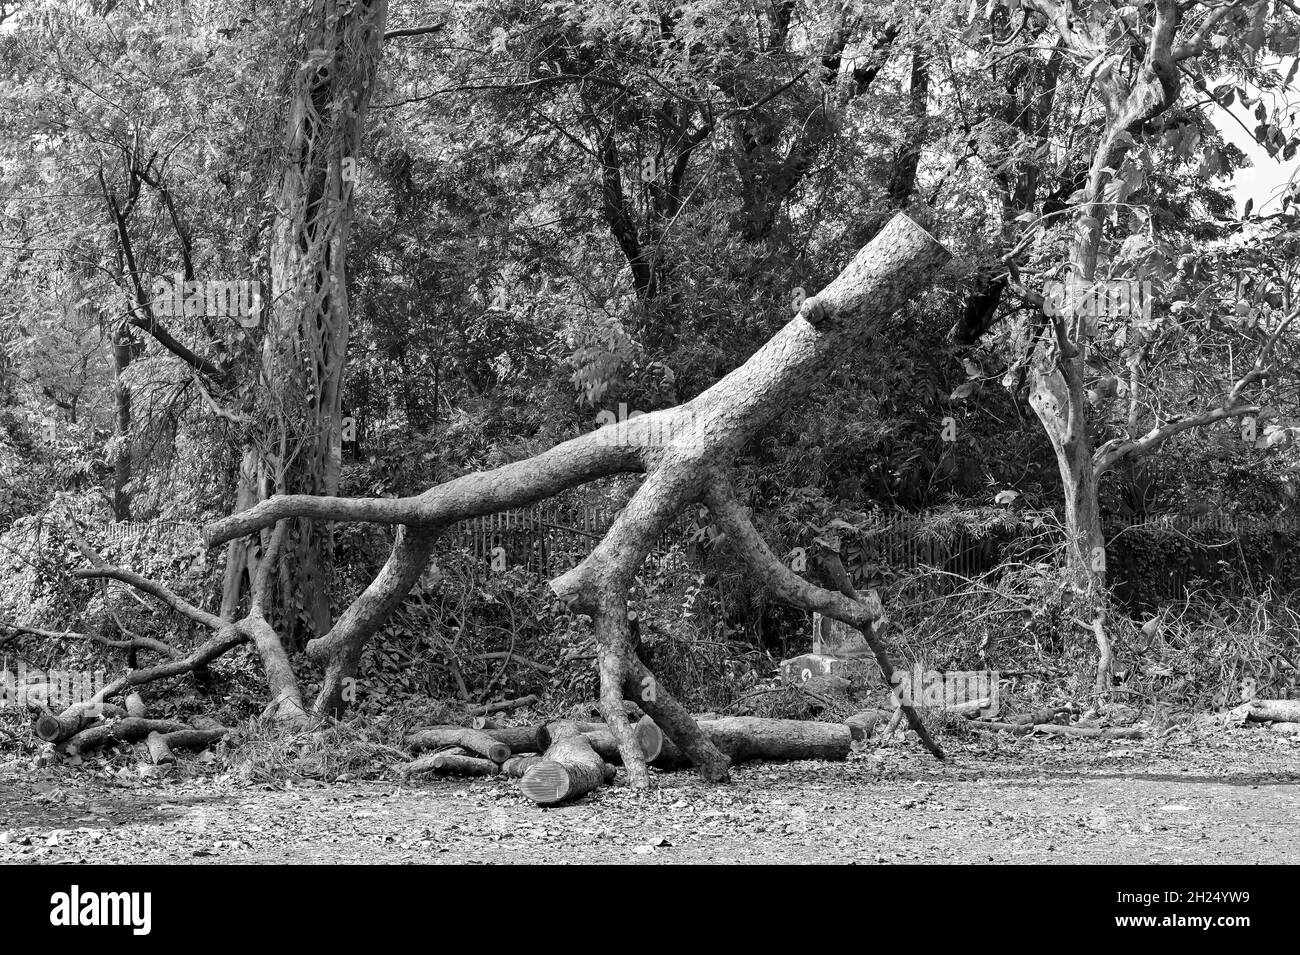 Schwarz-weißer Baumstamm von Säge geschnitten, symbolisches Bild der Zerstörung der Natur durch die zivilisierte Gesellschaft. Klimawandel, Bedrohung der natürlichen Umwelt. Stockfoto